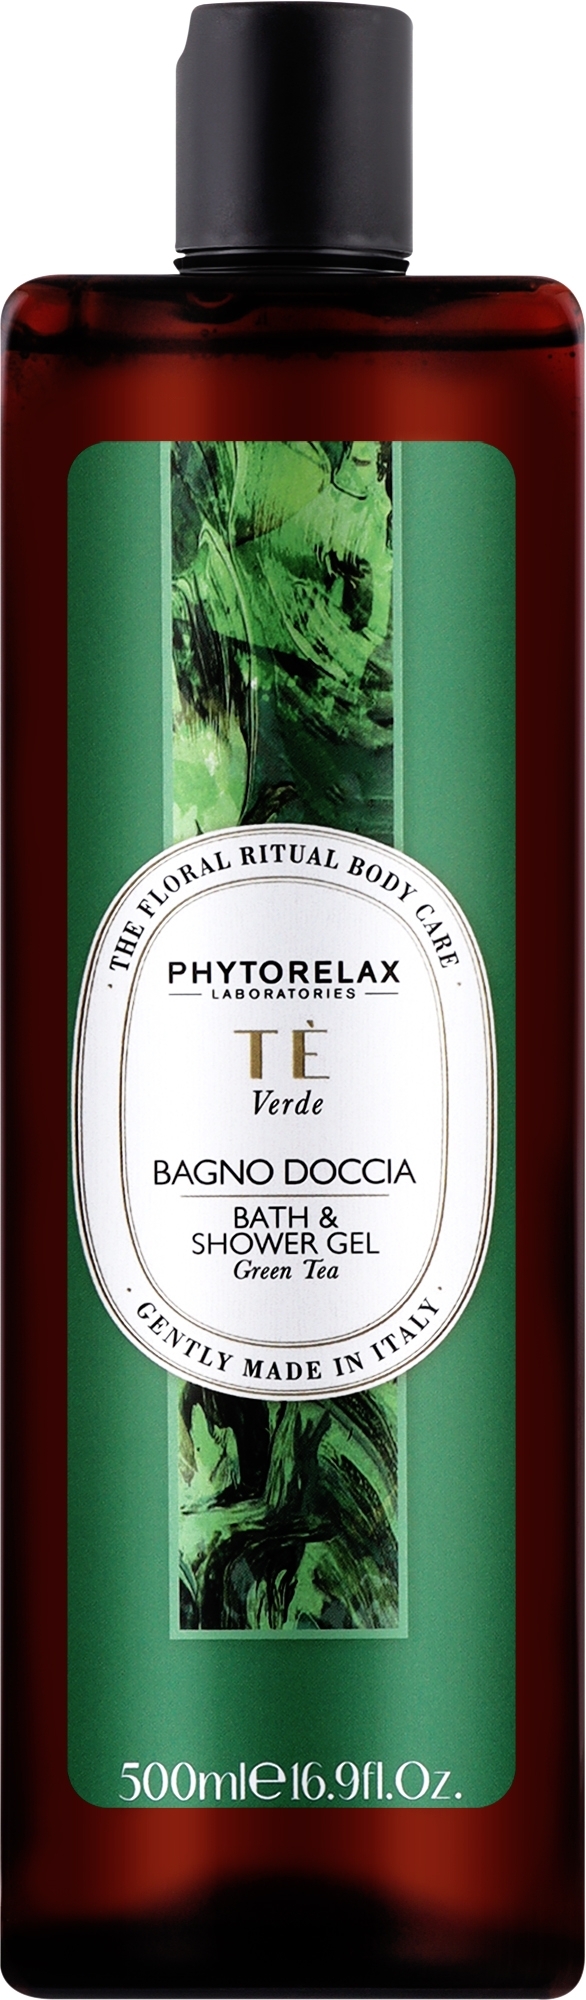 Żel pod prysznic i do kąpieli Green Tea - Phytorelax Laboratories Floral Ritual Bath & Shower Gel — Zdjęcie 500 ml